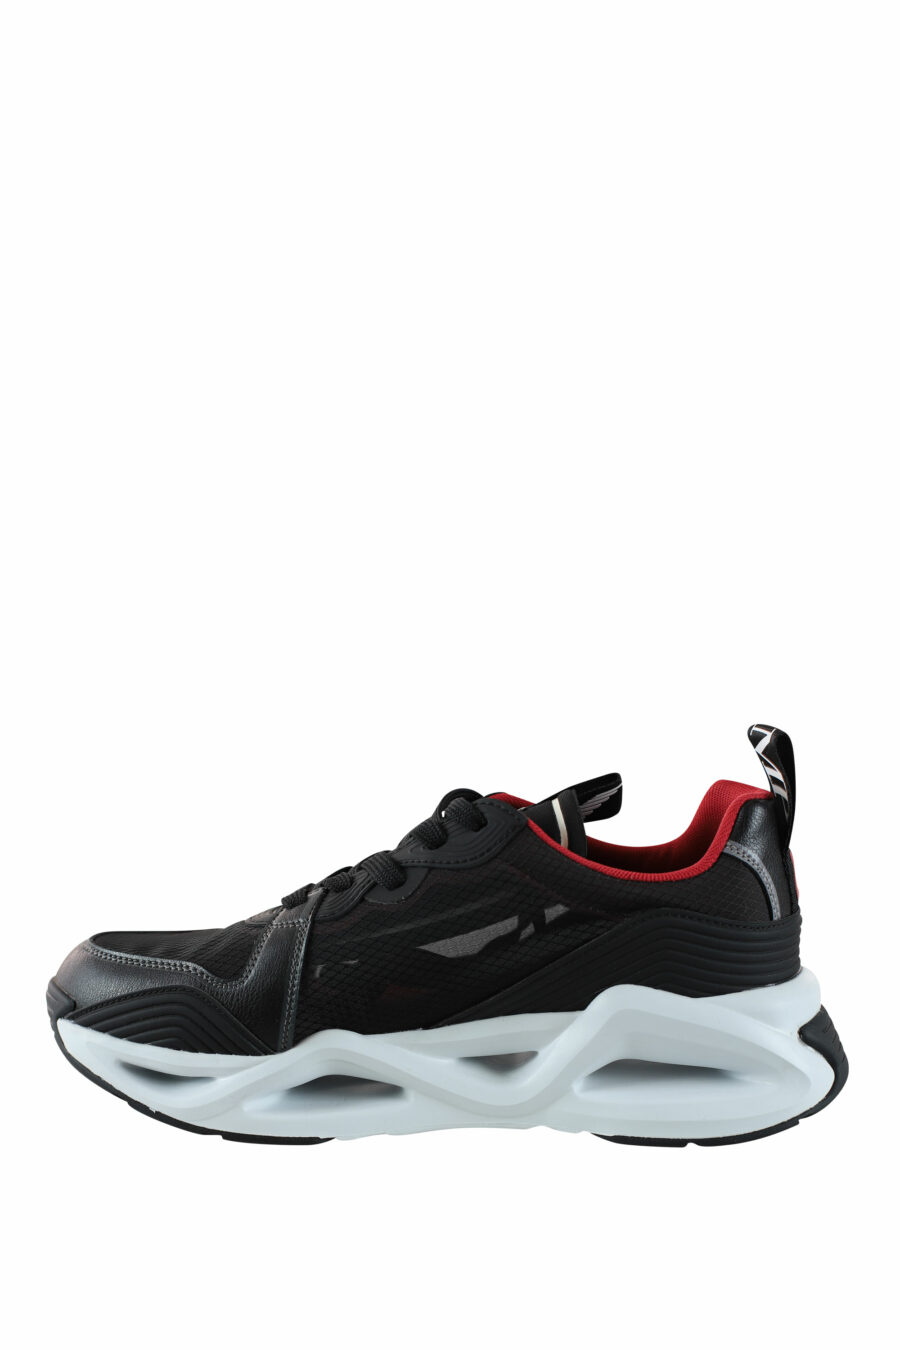 Zapatillas negras con detalles rojos "infinity evolution" - IMG 4583